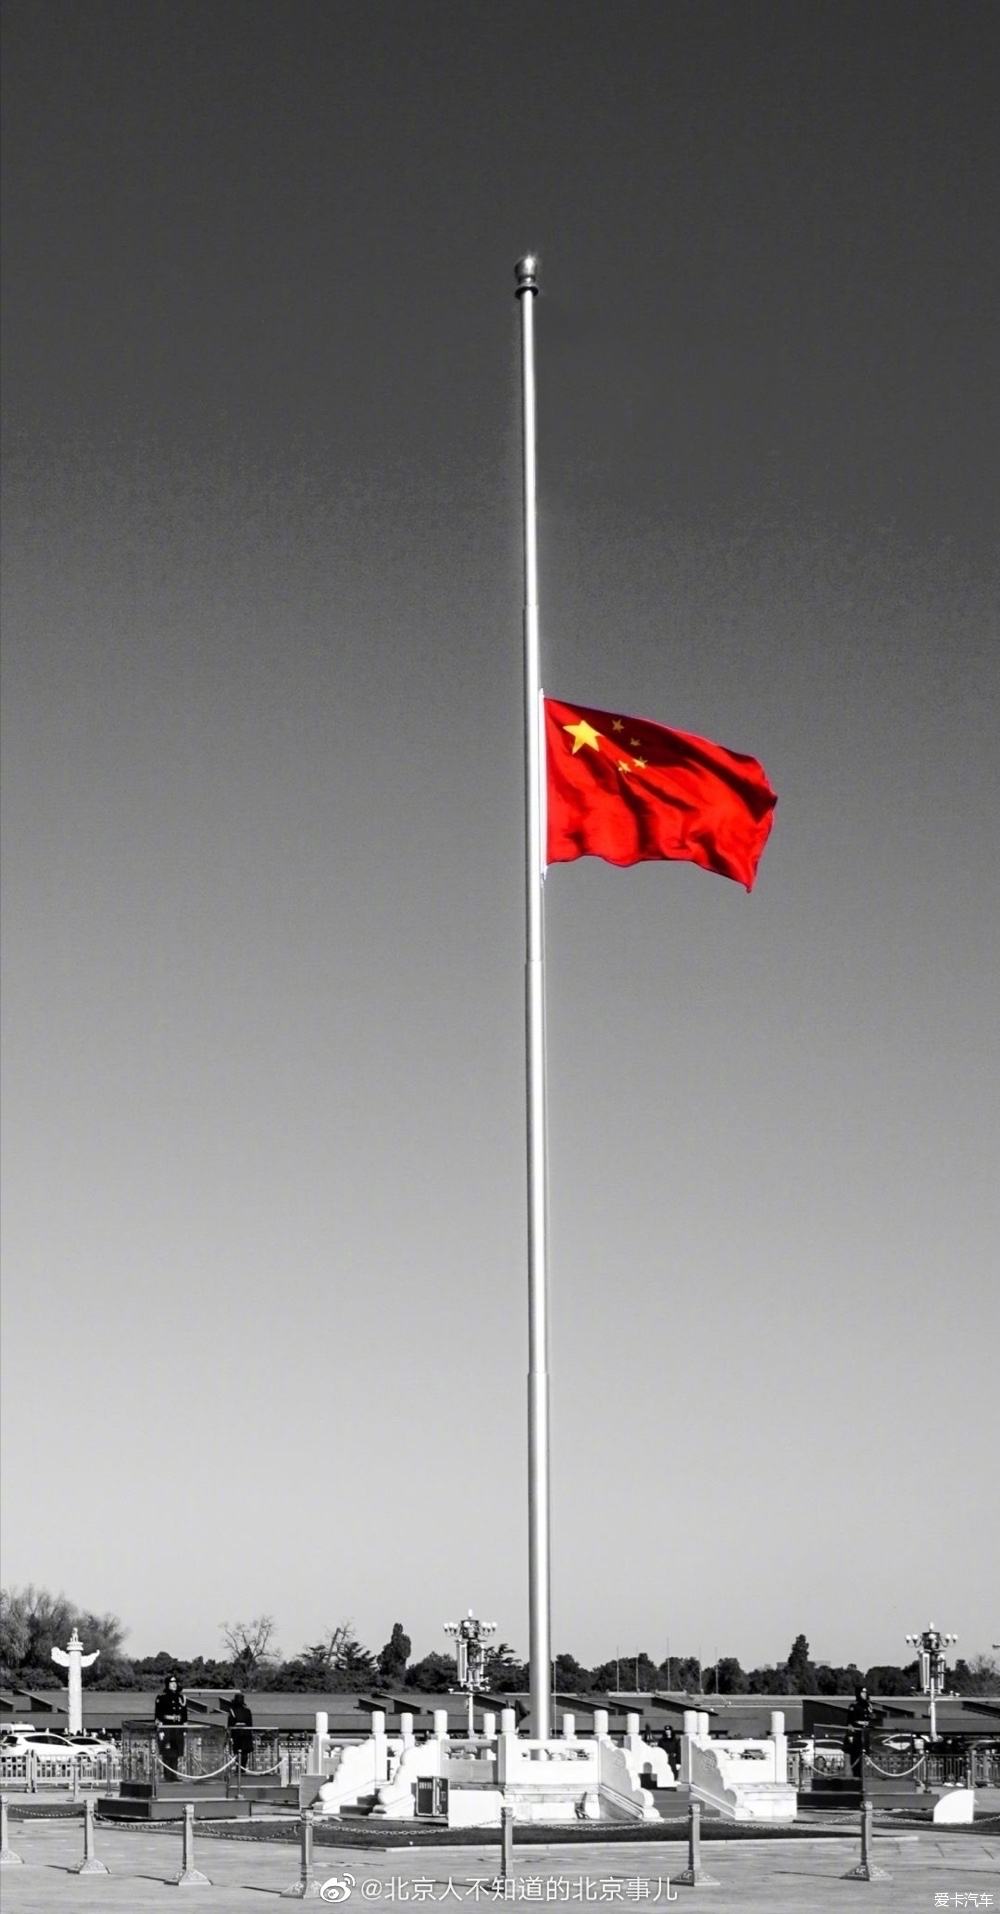 【图】今晨,天安门广场降半旗!为留在寒冬的他们